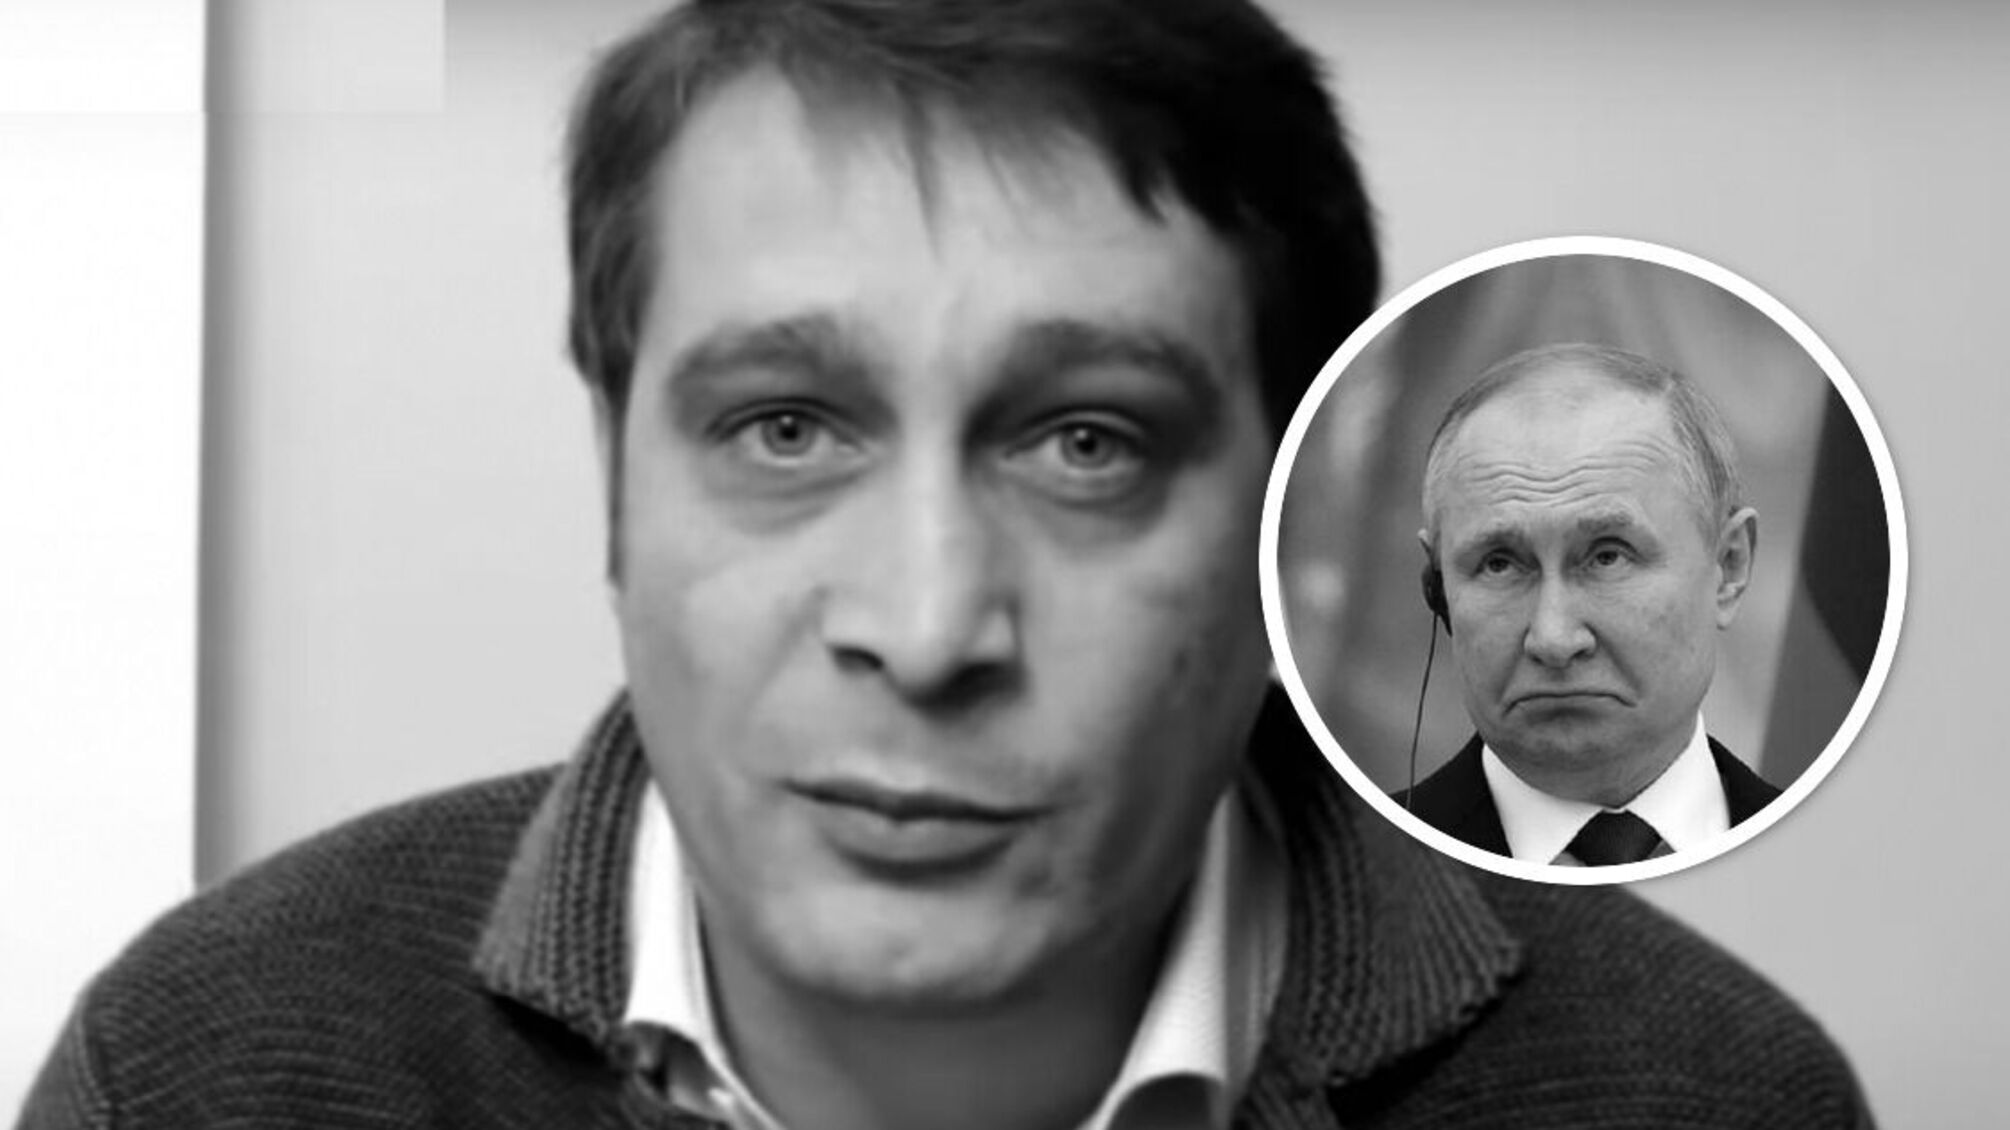 Умер российский пропагандист и сообщник путина Эдуард Багиров - детали